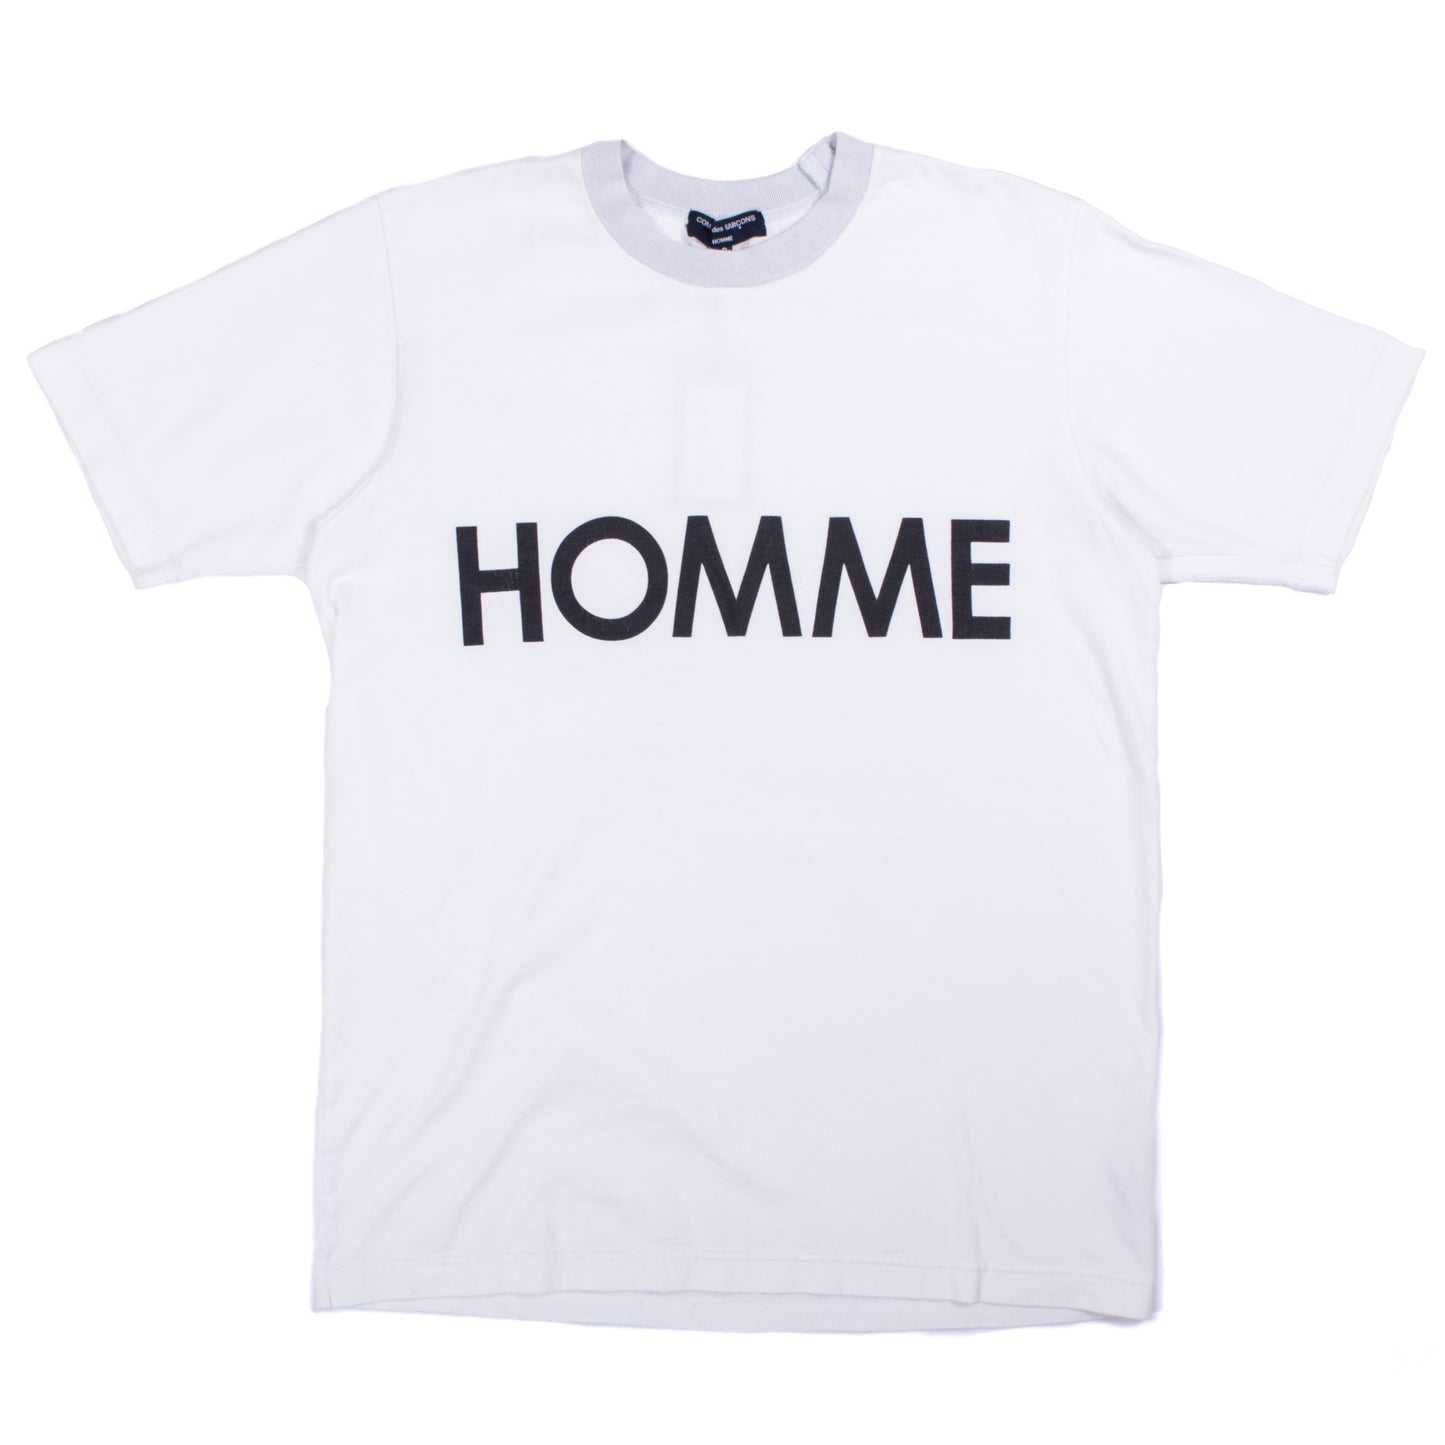 Comme des Garçons Homme "HOMME" T-Shirt (2012AW)